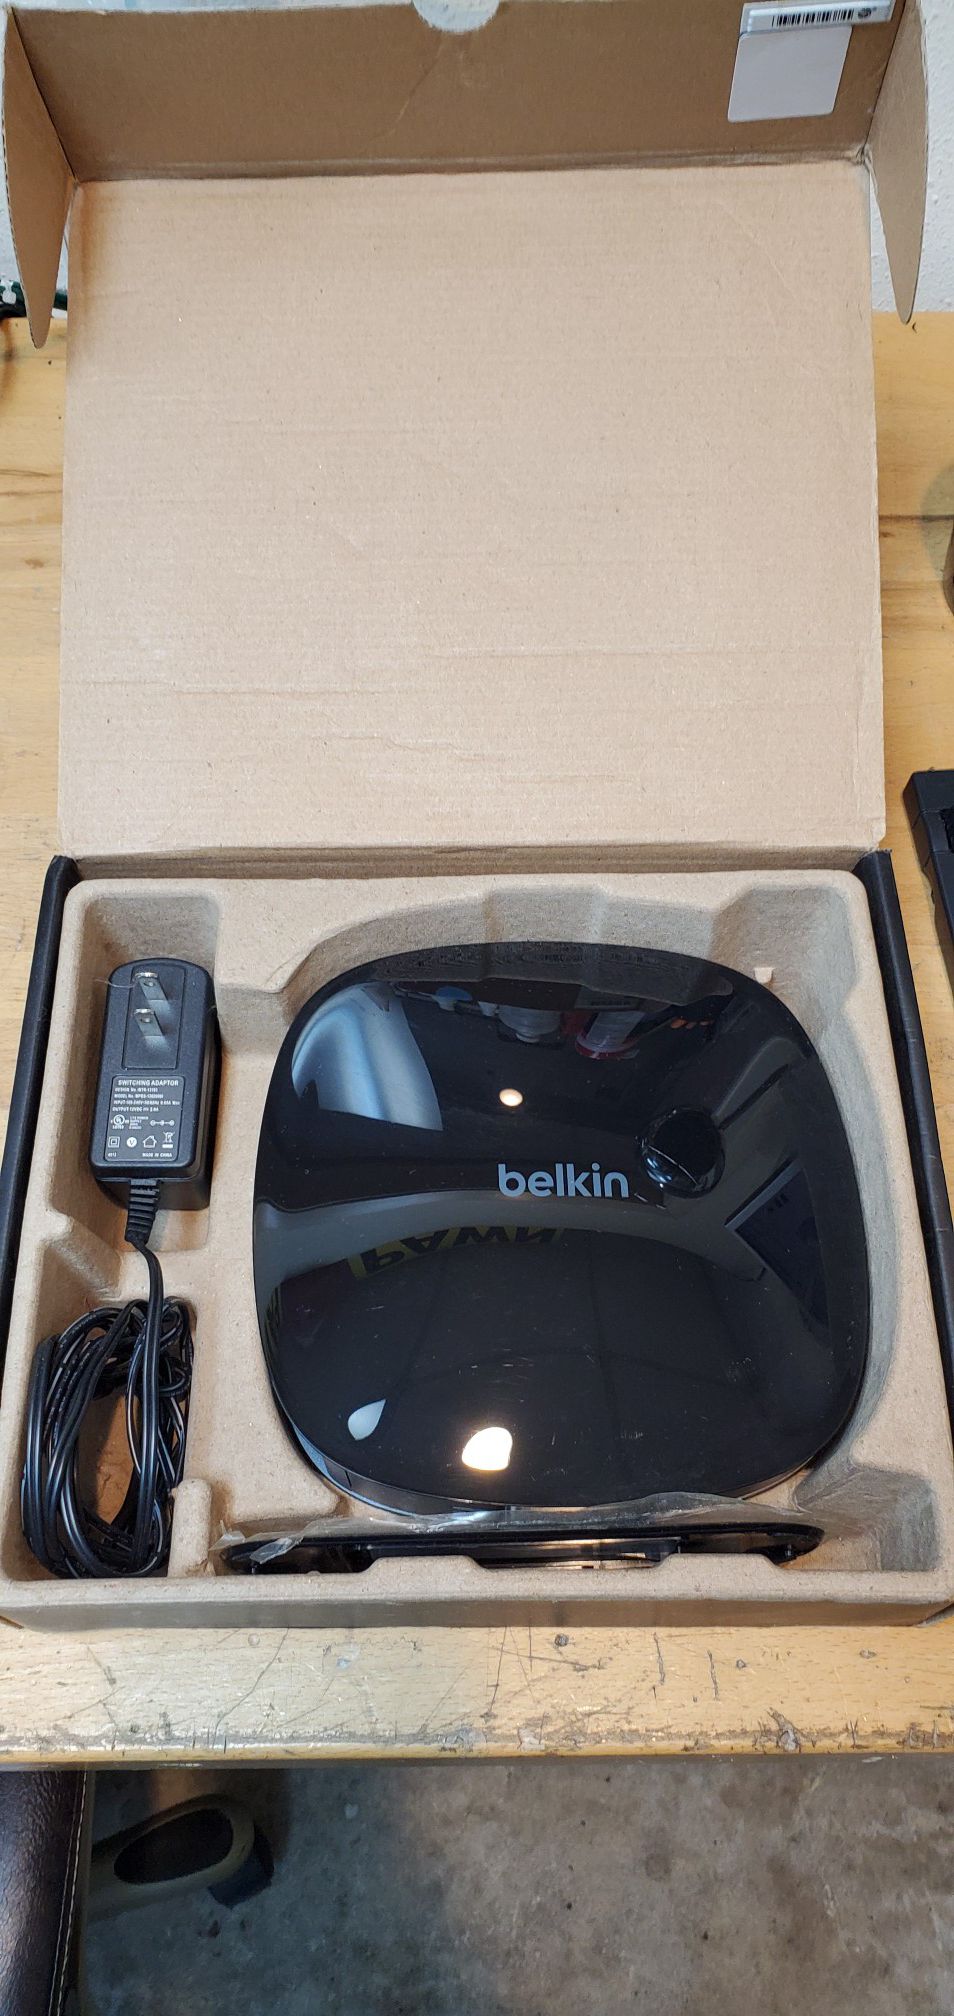 Belkin ac 750 db wifi router